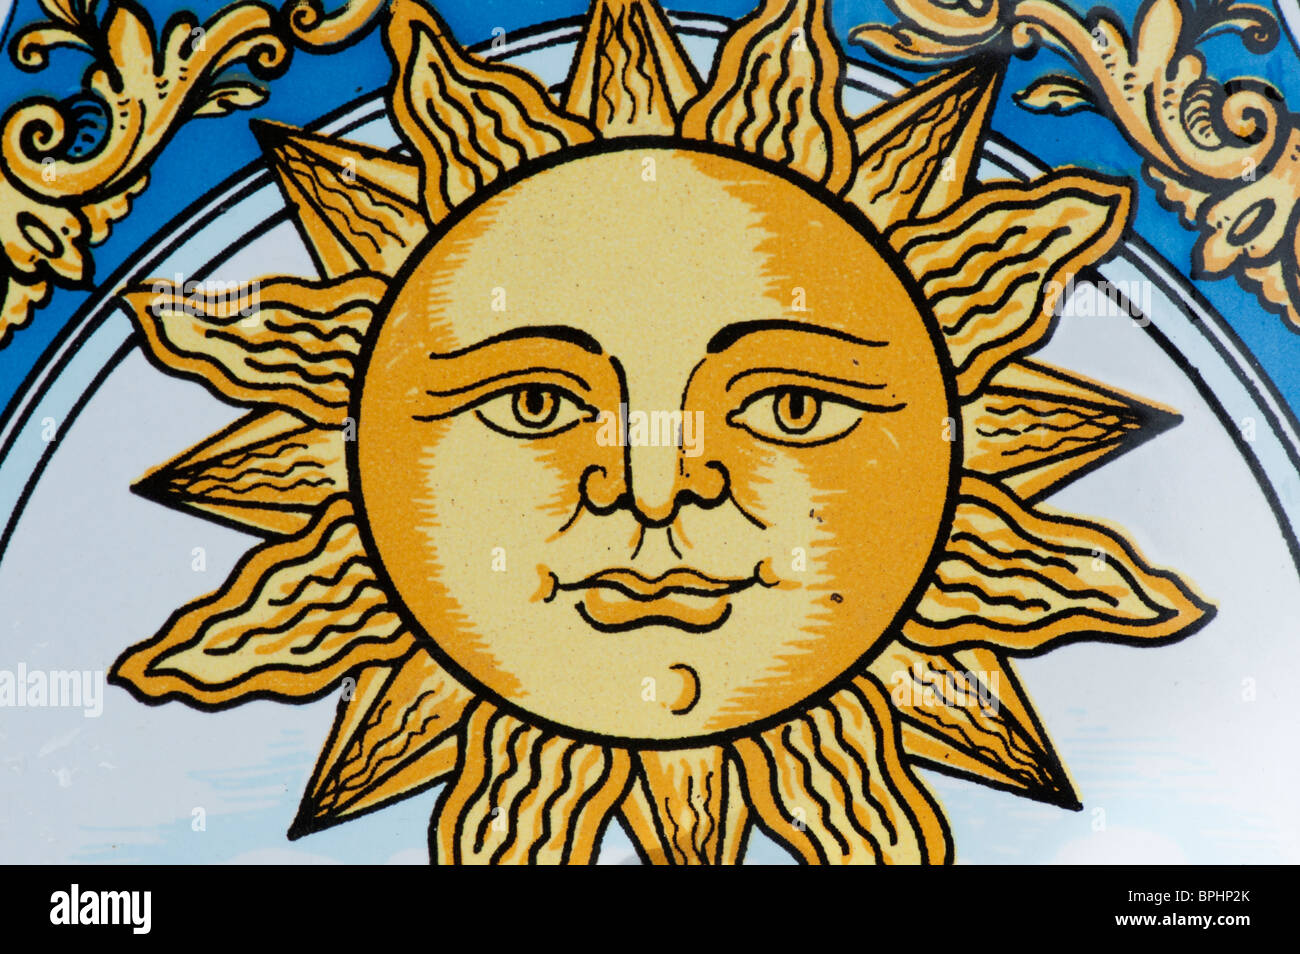 Soleil peint sur un carreau de céramique Banque D'Images